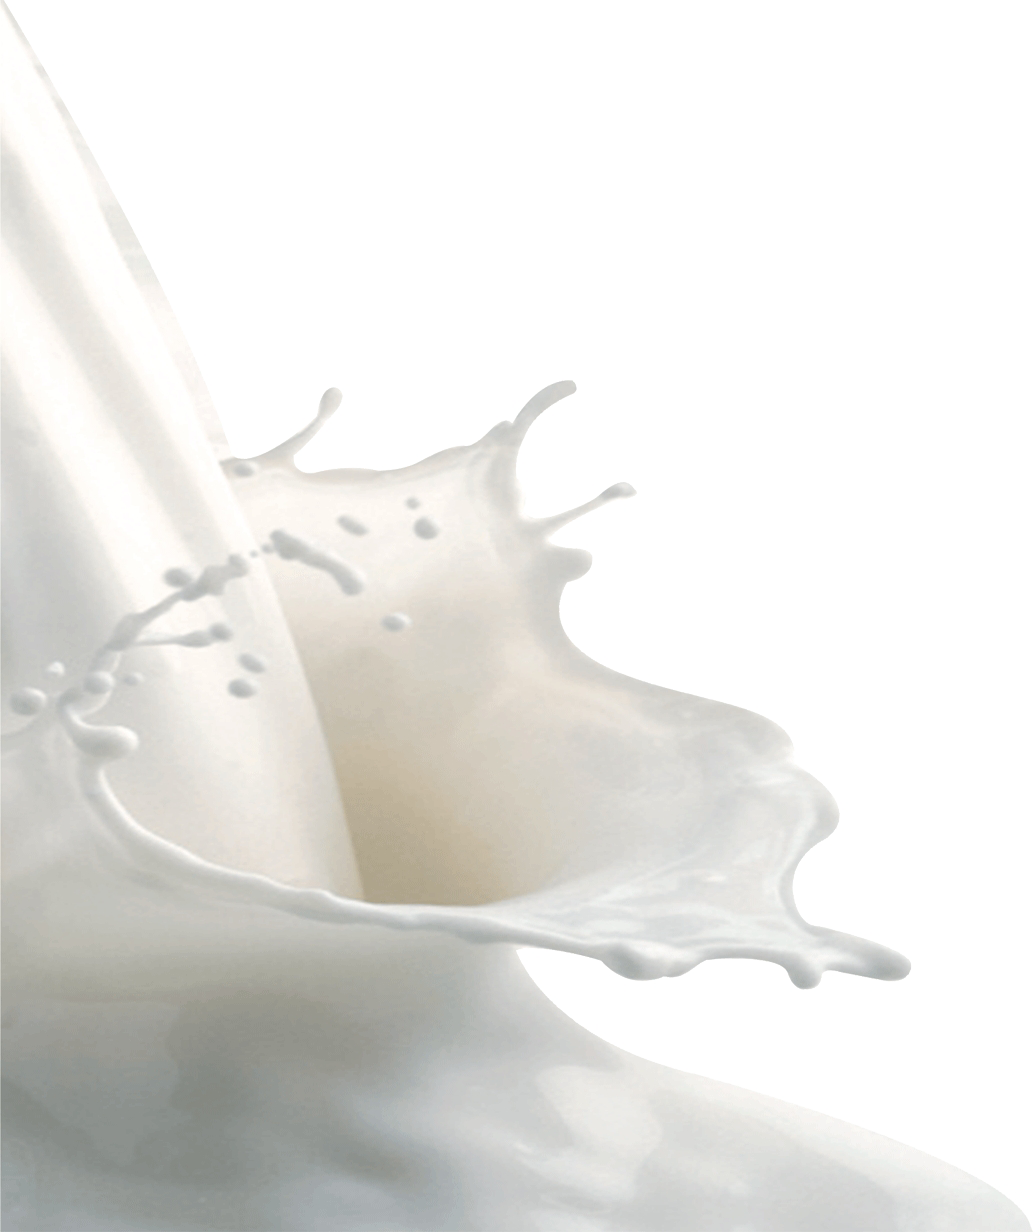 दूध के छींटे, दूध की लहरें